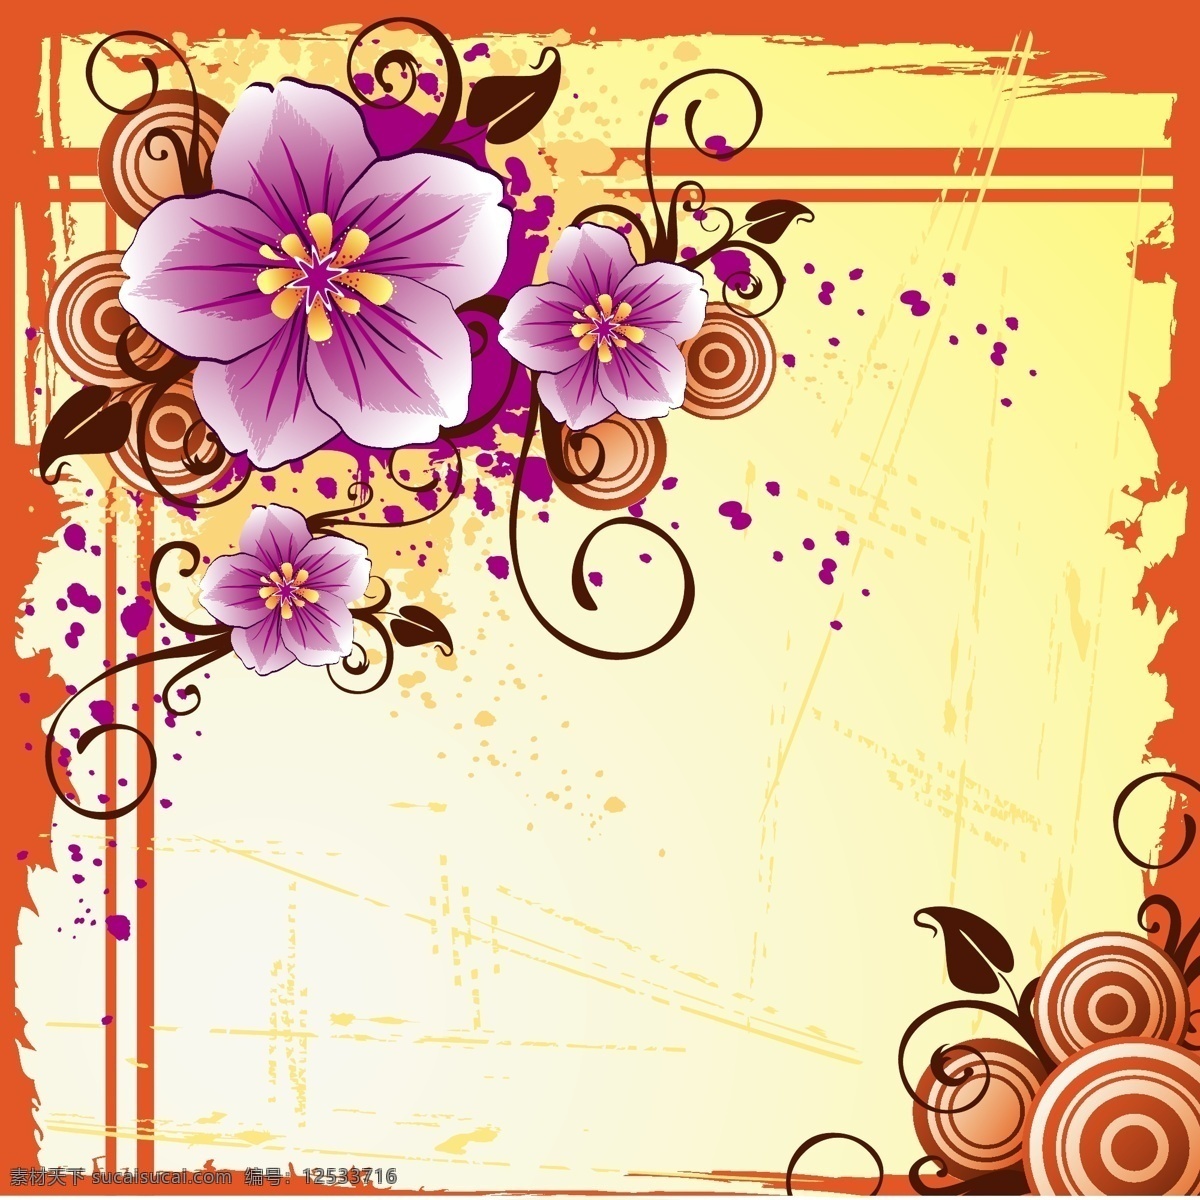 紫色 藤蔓 圆环 花朵 插画 边框 橙色 印花图案 植物 紫色藤蔓